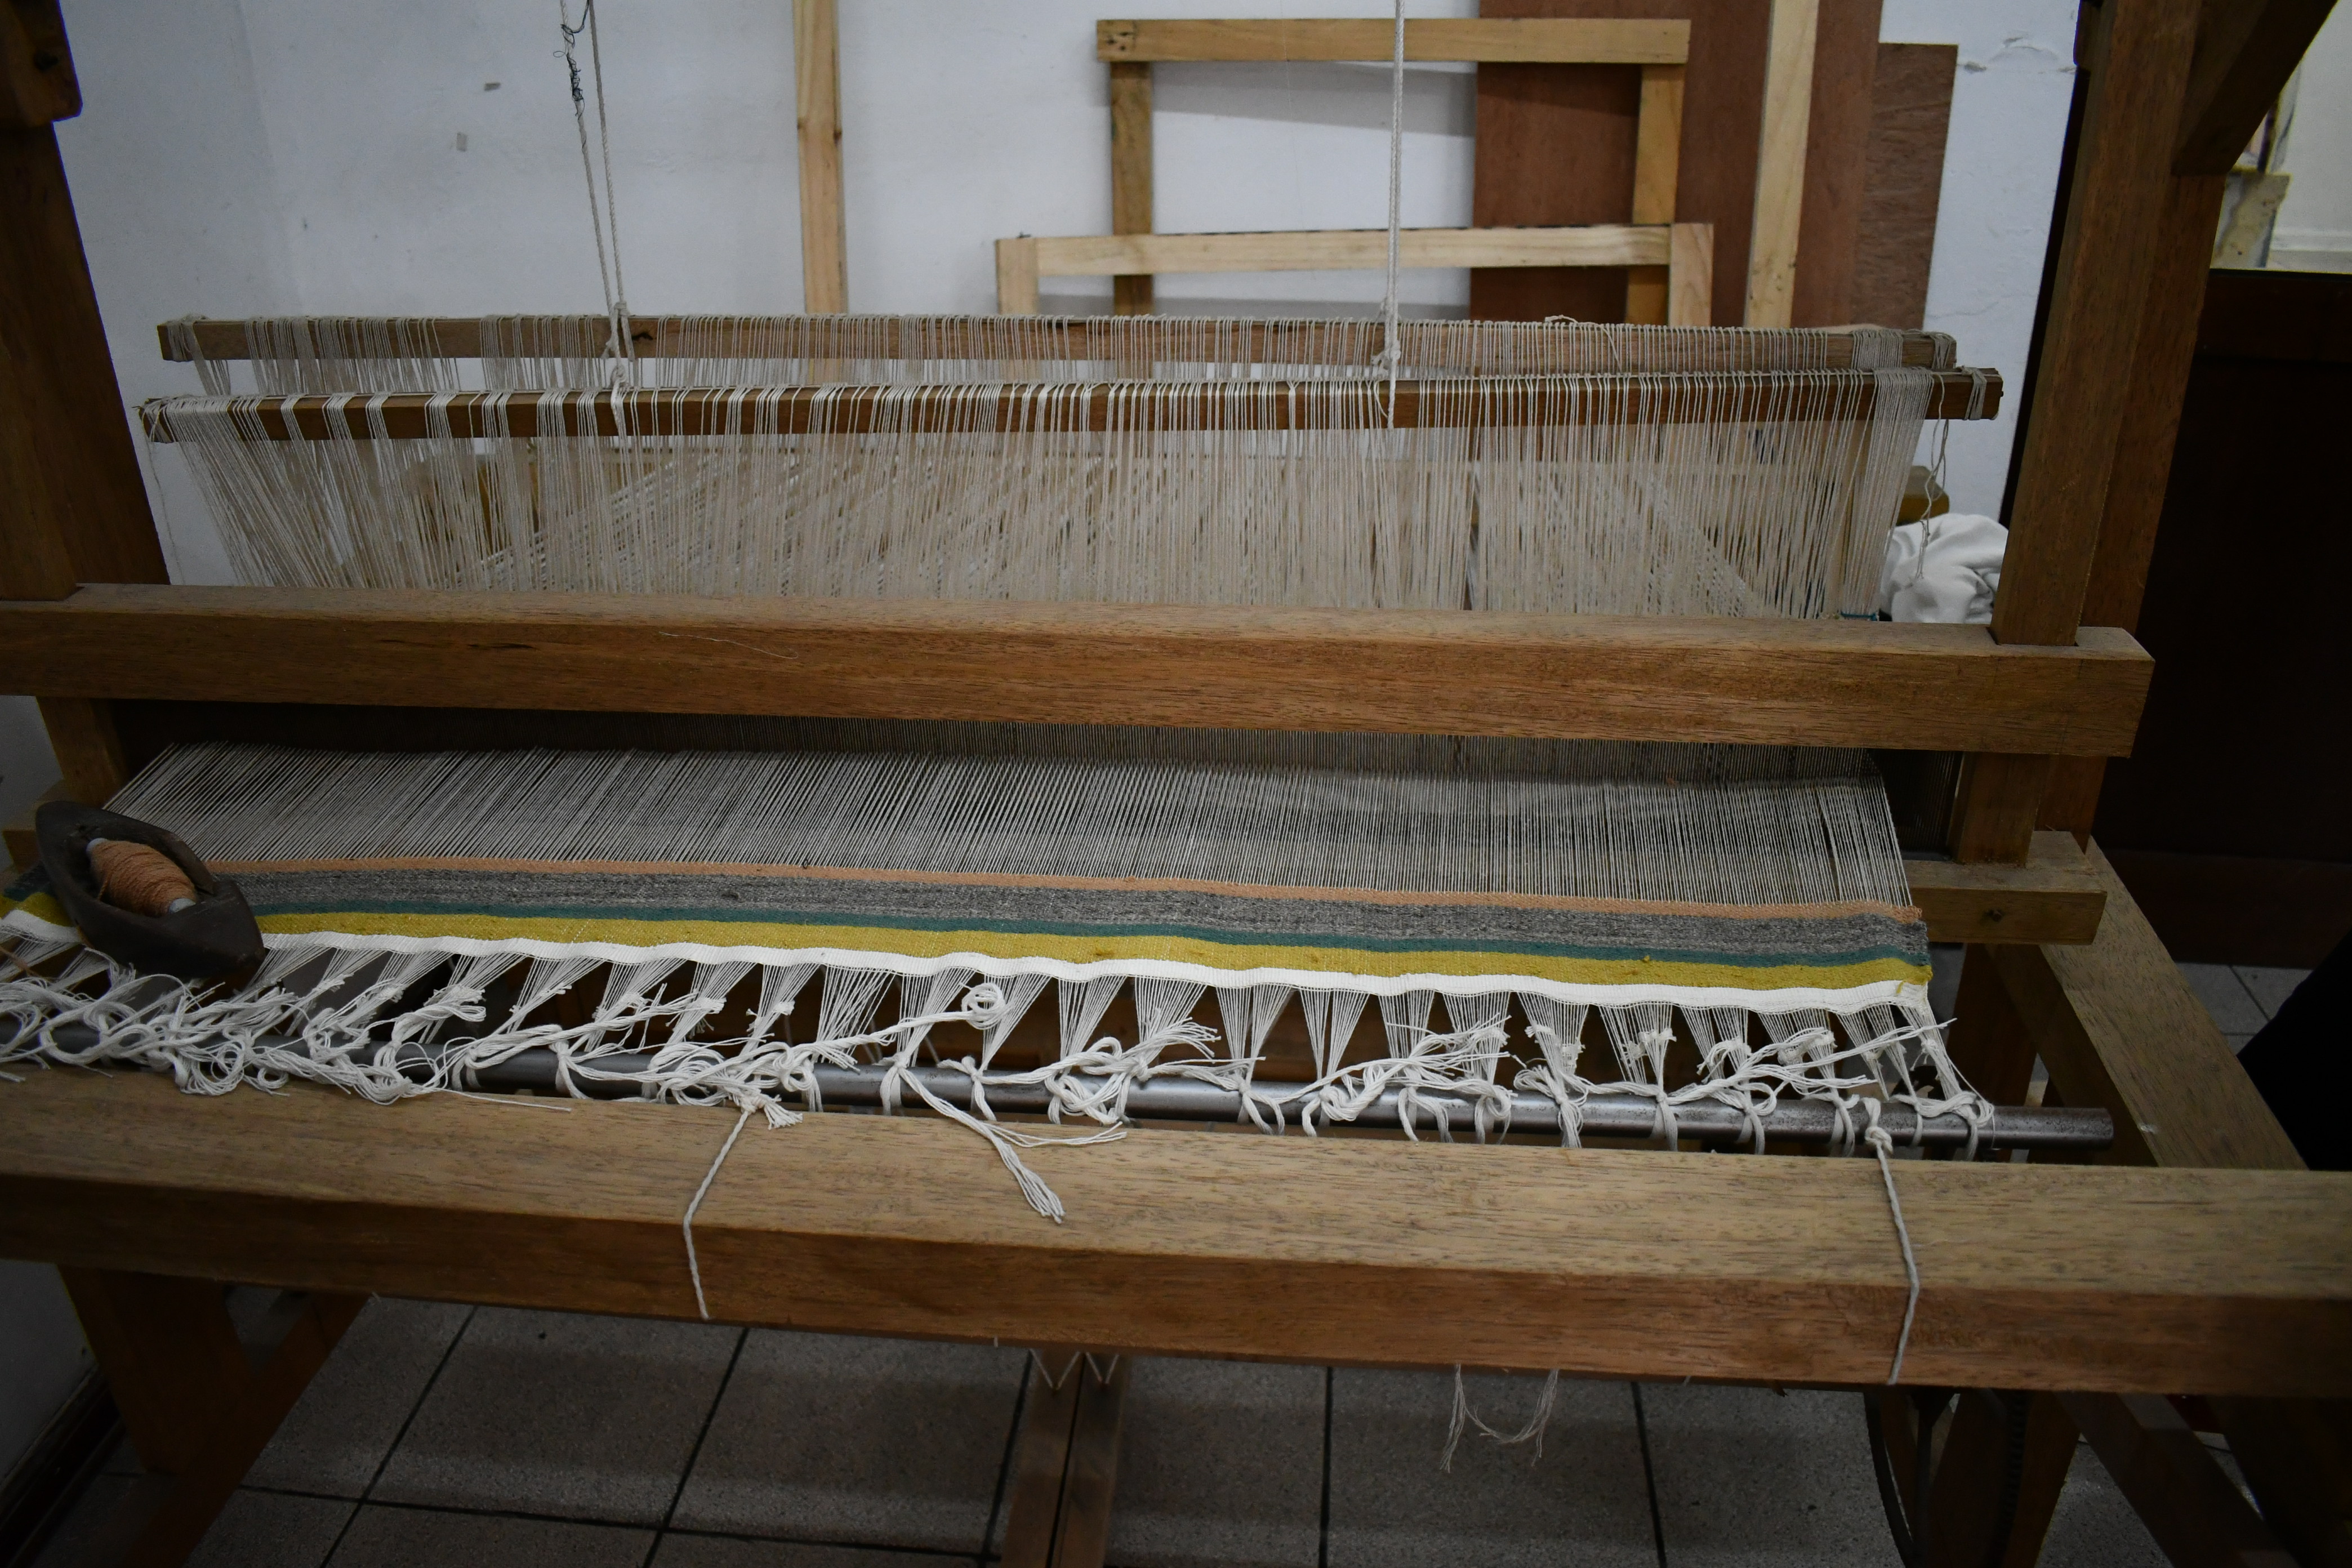 La artista Ana Teresa Barboza teje sus piezas con la máquina del telar. The artist Ana Teresa Barboza weaves her pieces with a loom machine.